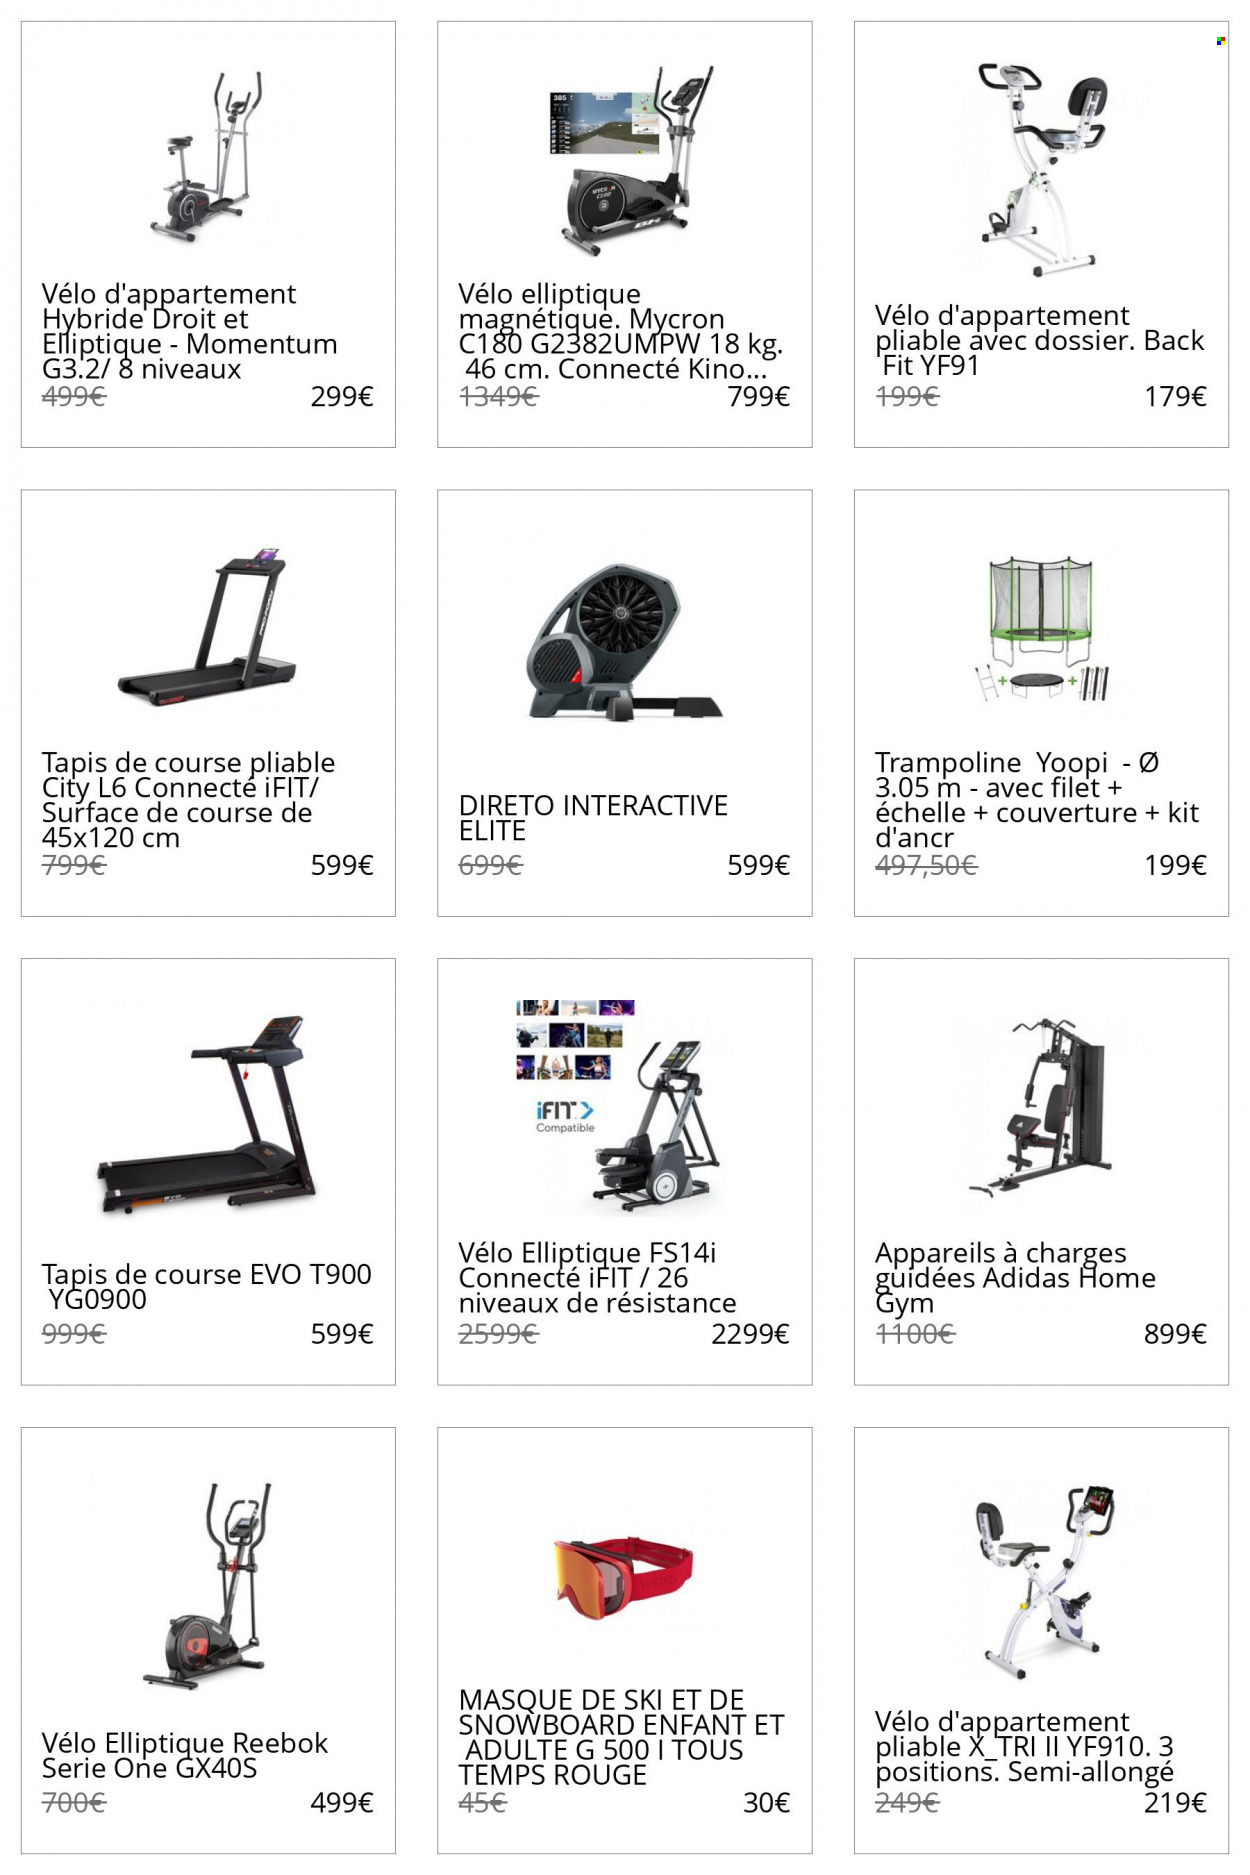 thumbnail - Catalogue Decathlon - Produits soldés - Reebok, masque de ski, snowboard, masque, vélo d'appartement, trampoline. Page 9.